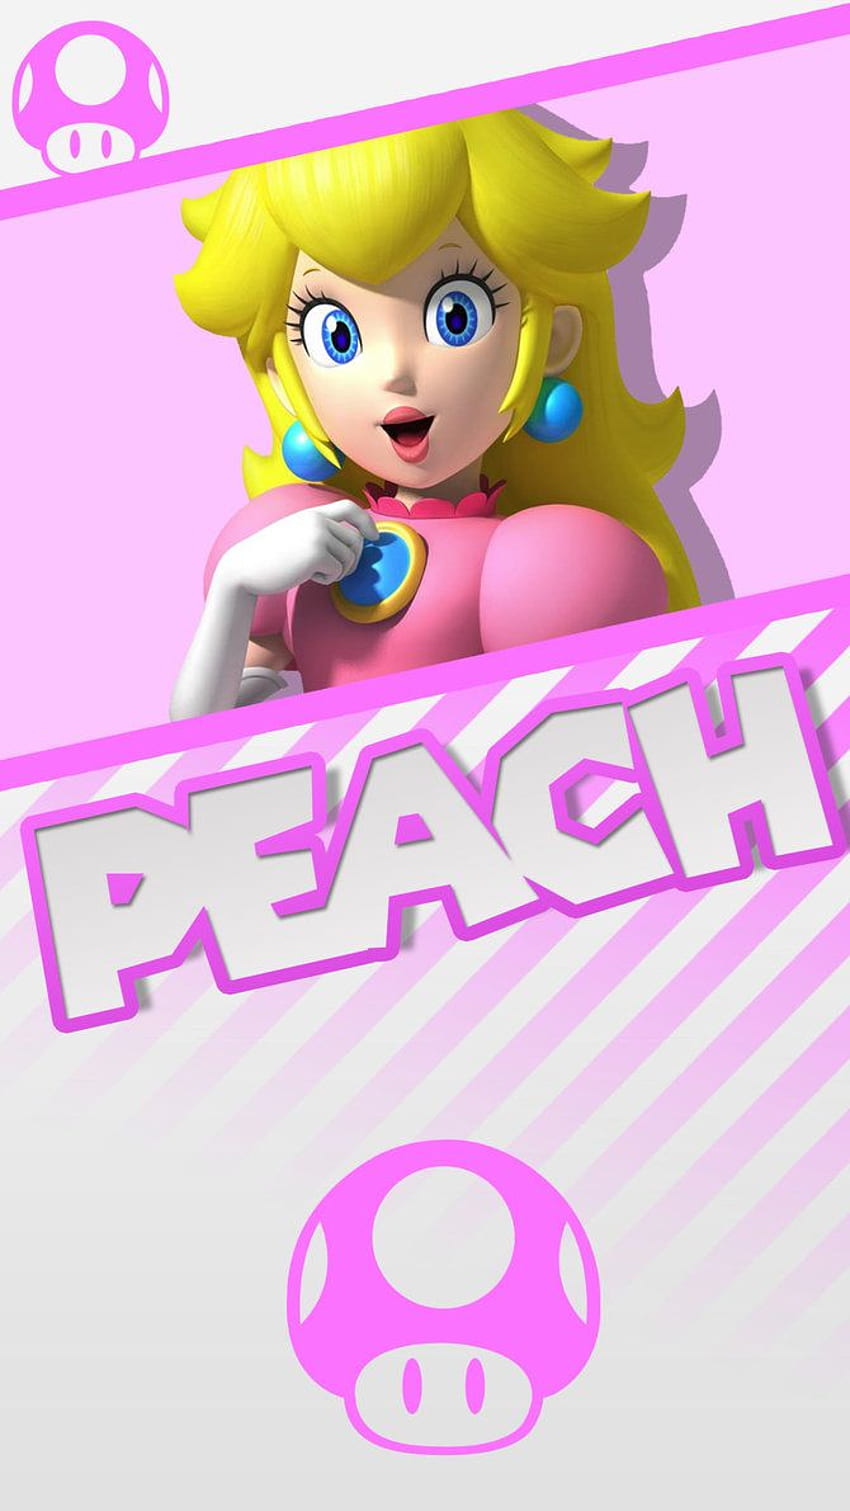 Peach Super Mario Phone by MrThatKidAlex24. Peach mario bros, Super mario peach, Peach mario, Princess Peach Phone HD phone wallpaper